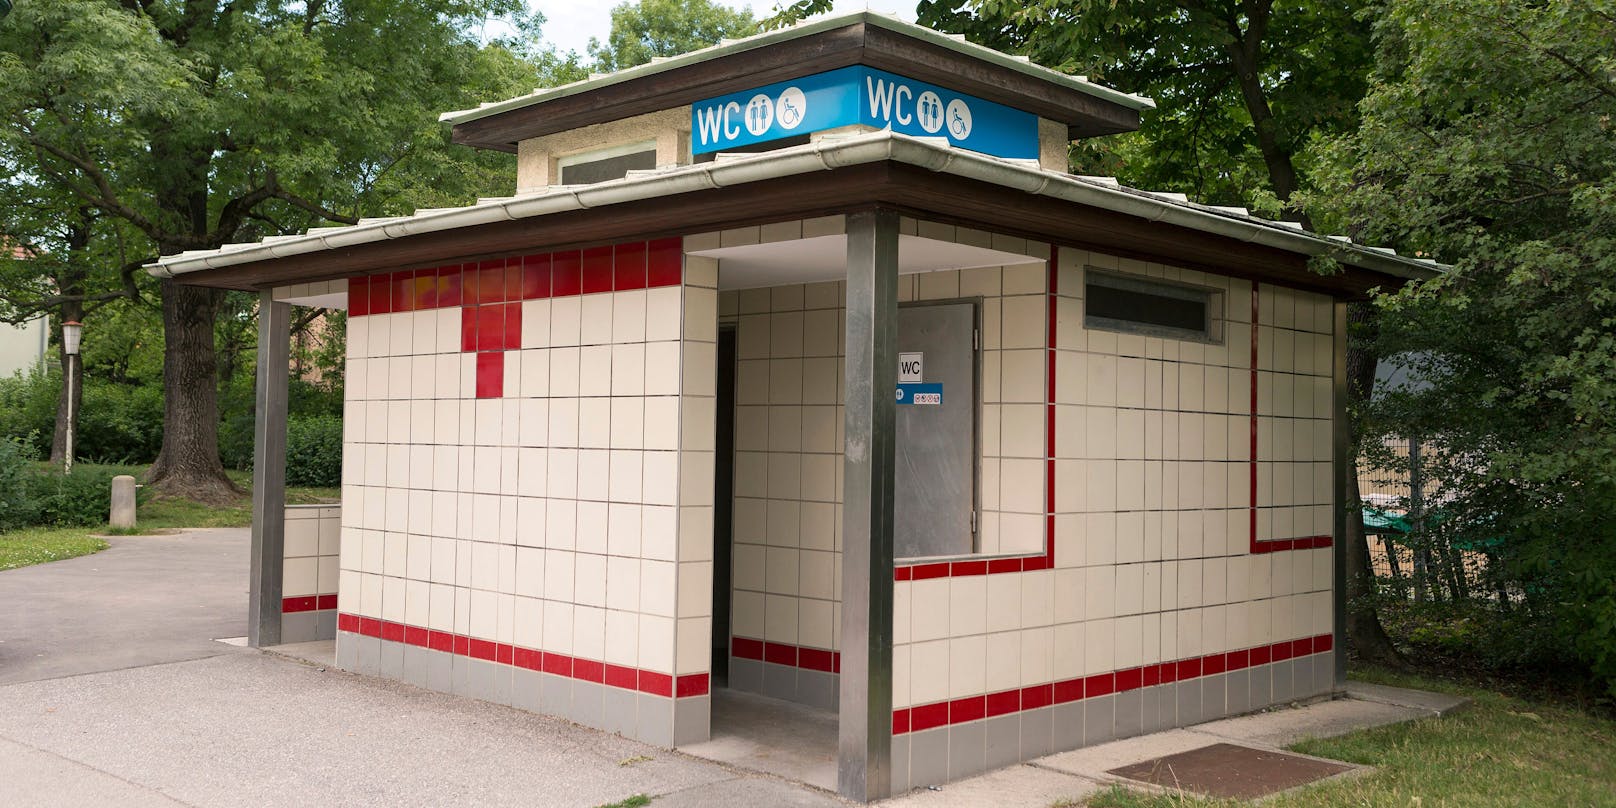 Ein öffentliches WC in Wien. (Symbolbild)